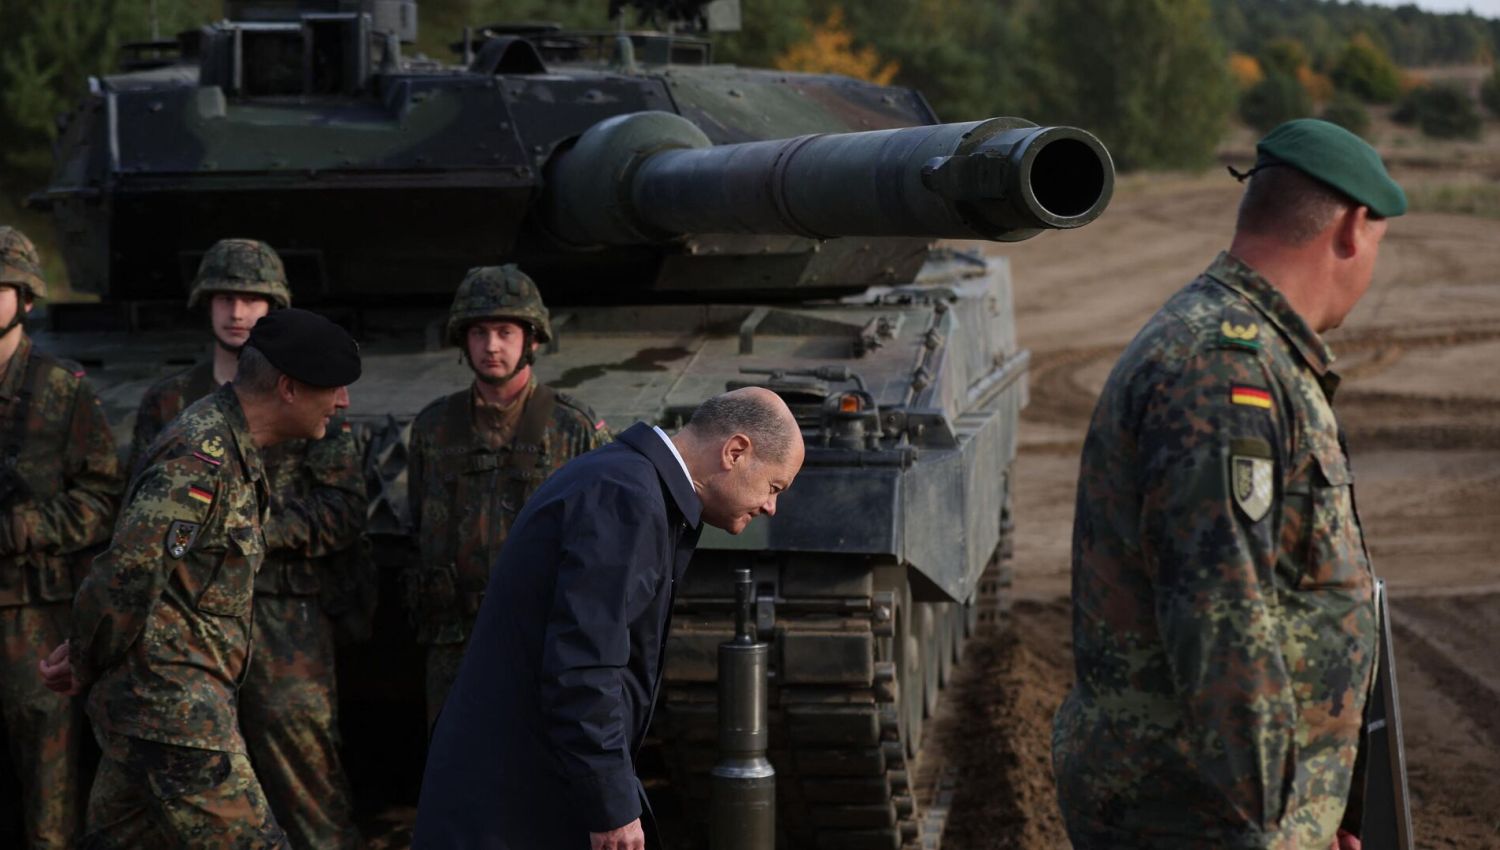 تسليح أوكرانيا بالدبابات: تقاذف المسؤوليات خشية التورط مع روسيا؟ 